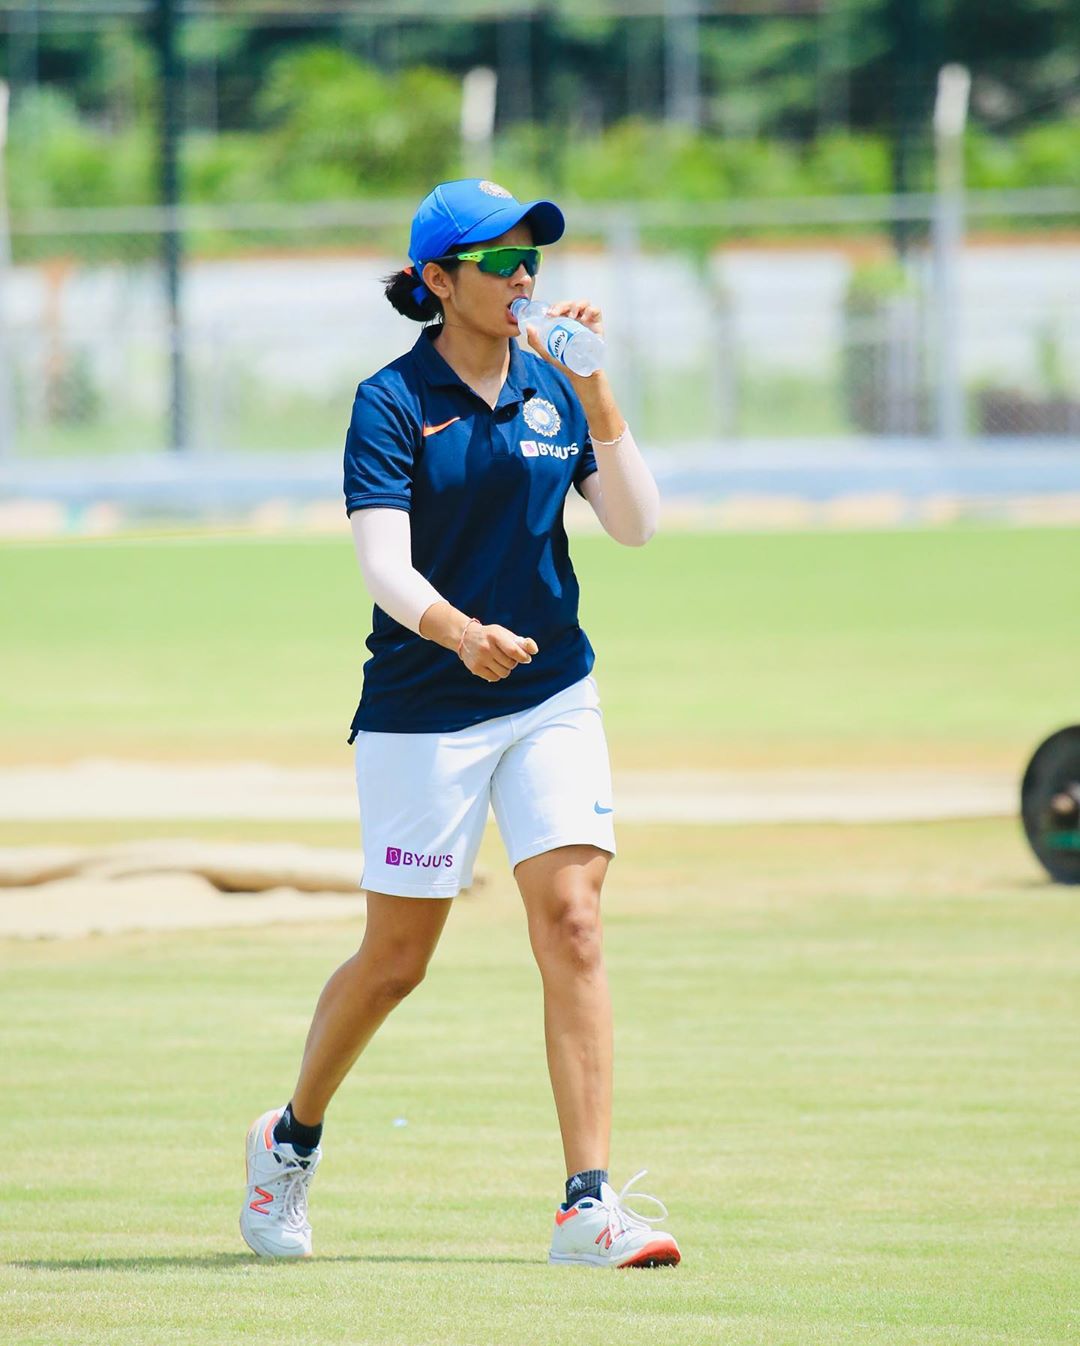 प्रिया पुनिया भारतीय महिला क्रिकेट संघातील अष्टपैलू खेळाडू आहे. (फोटो सौजन्य : प्रिया पुनिया / इंस्टाग्राम)